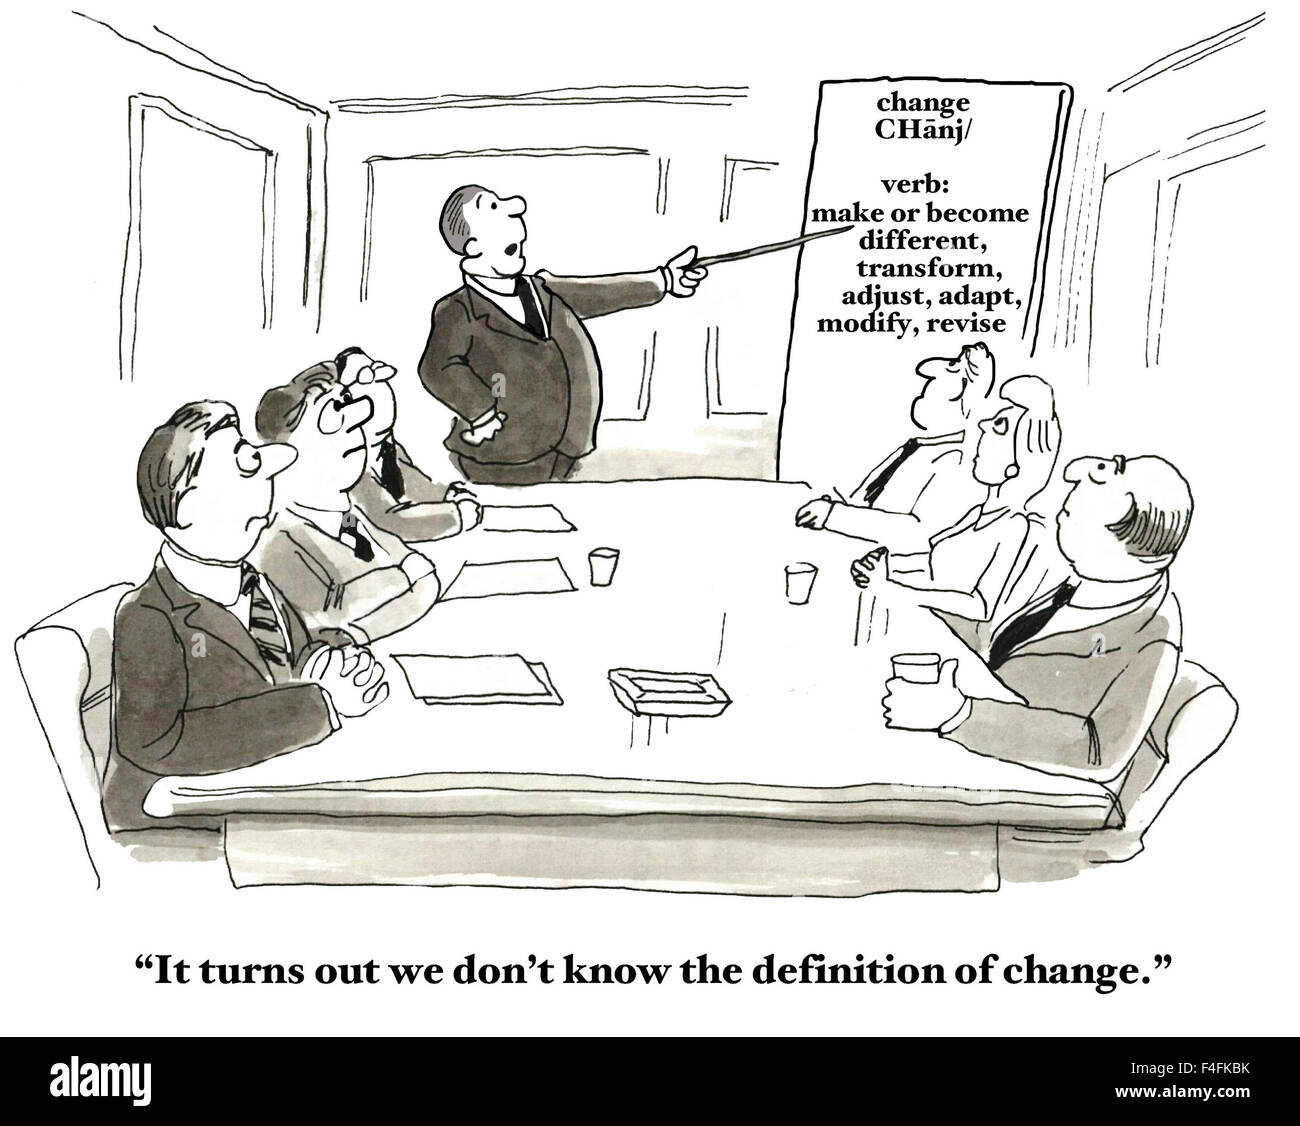 Cartoon professionale di persone in riunione e grafico che definisce "modifica". "Si scopre che non conosciamo la definizione di cambiamento". Foto Stock